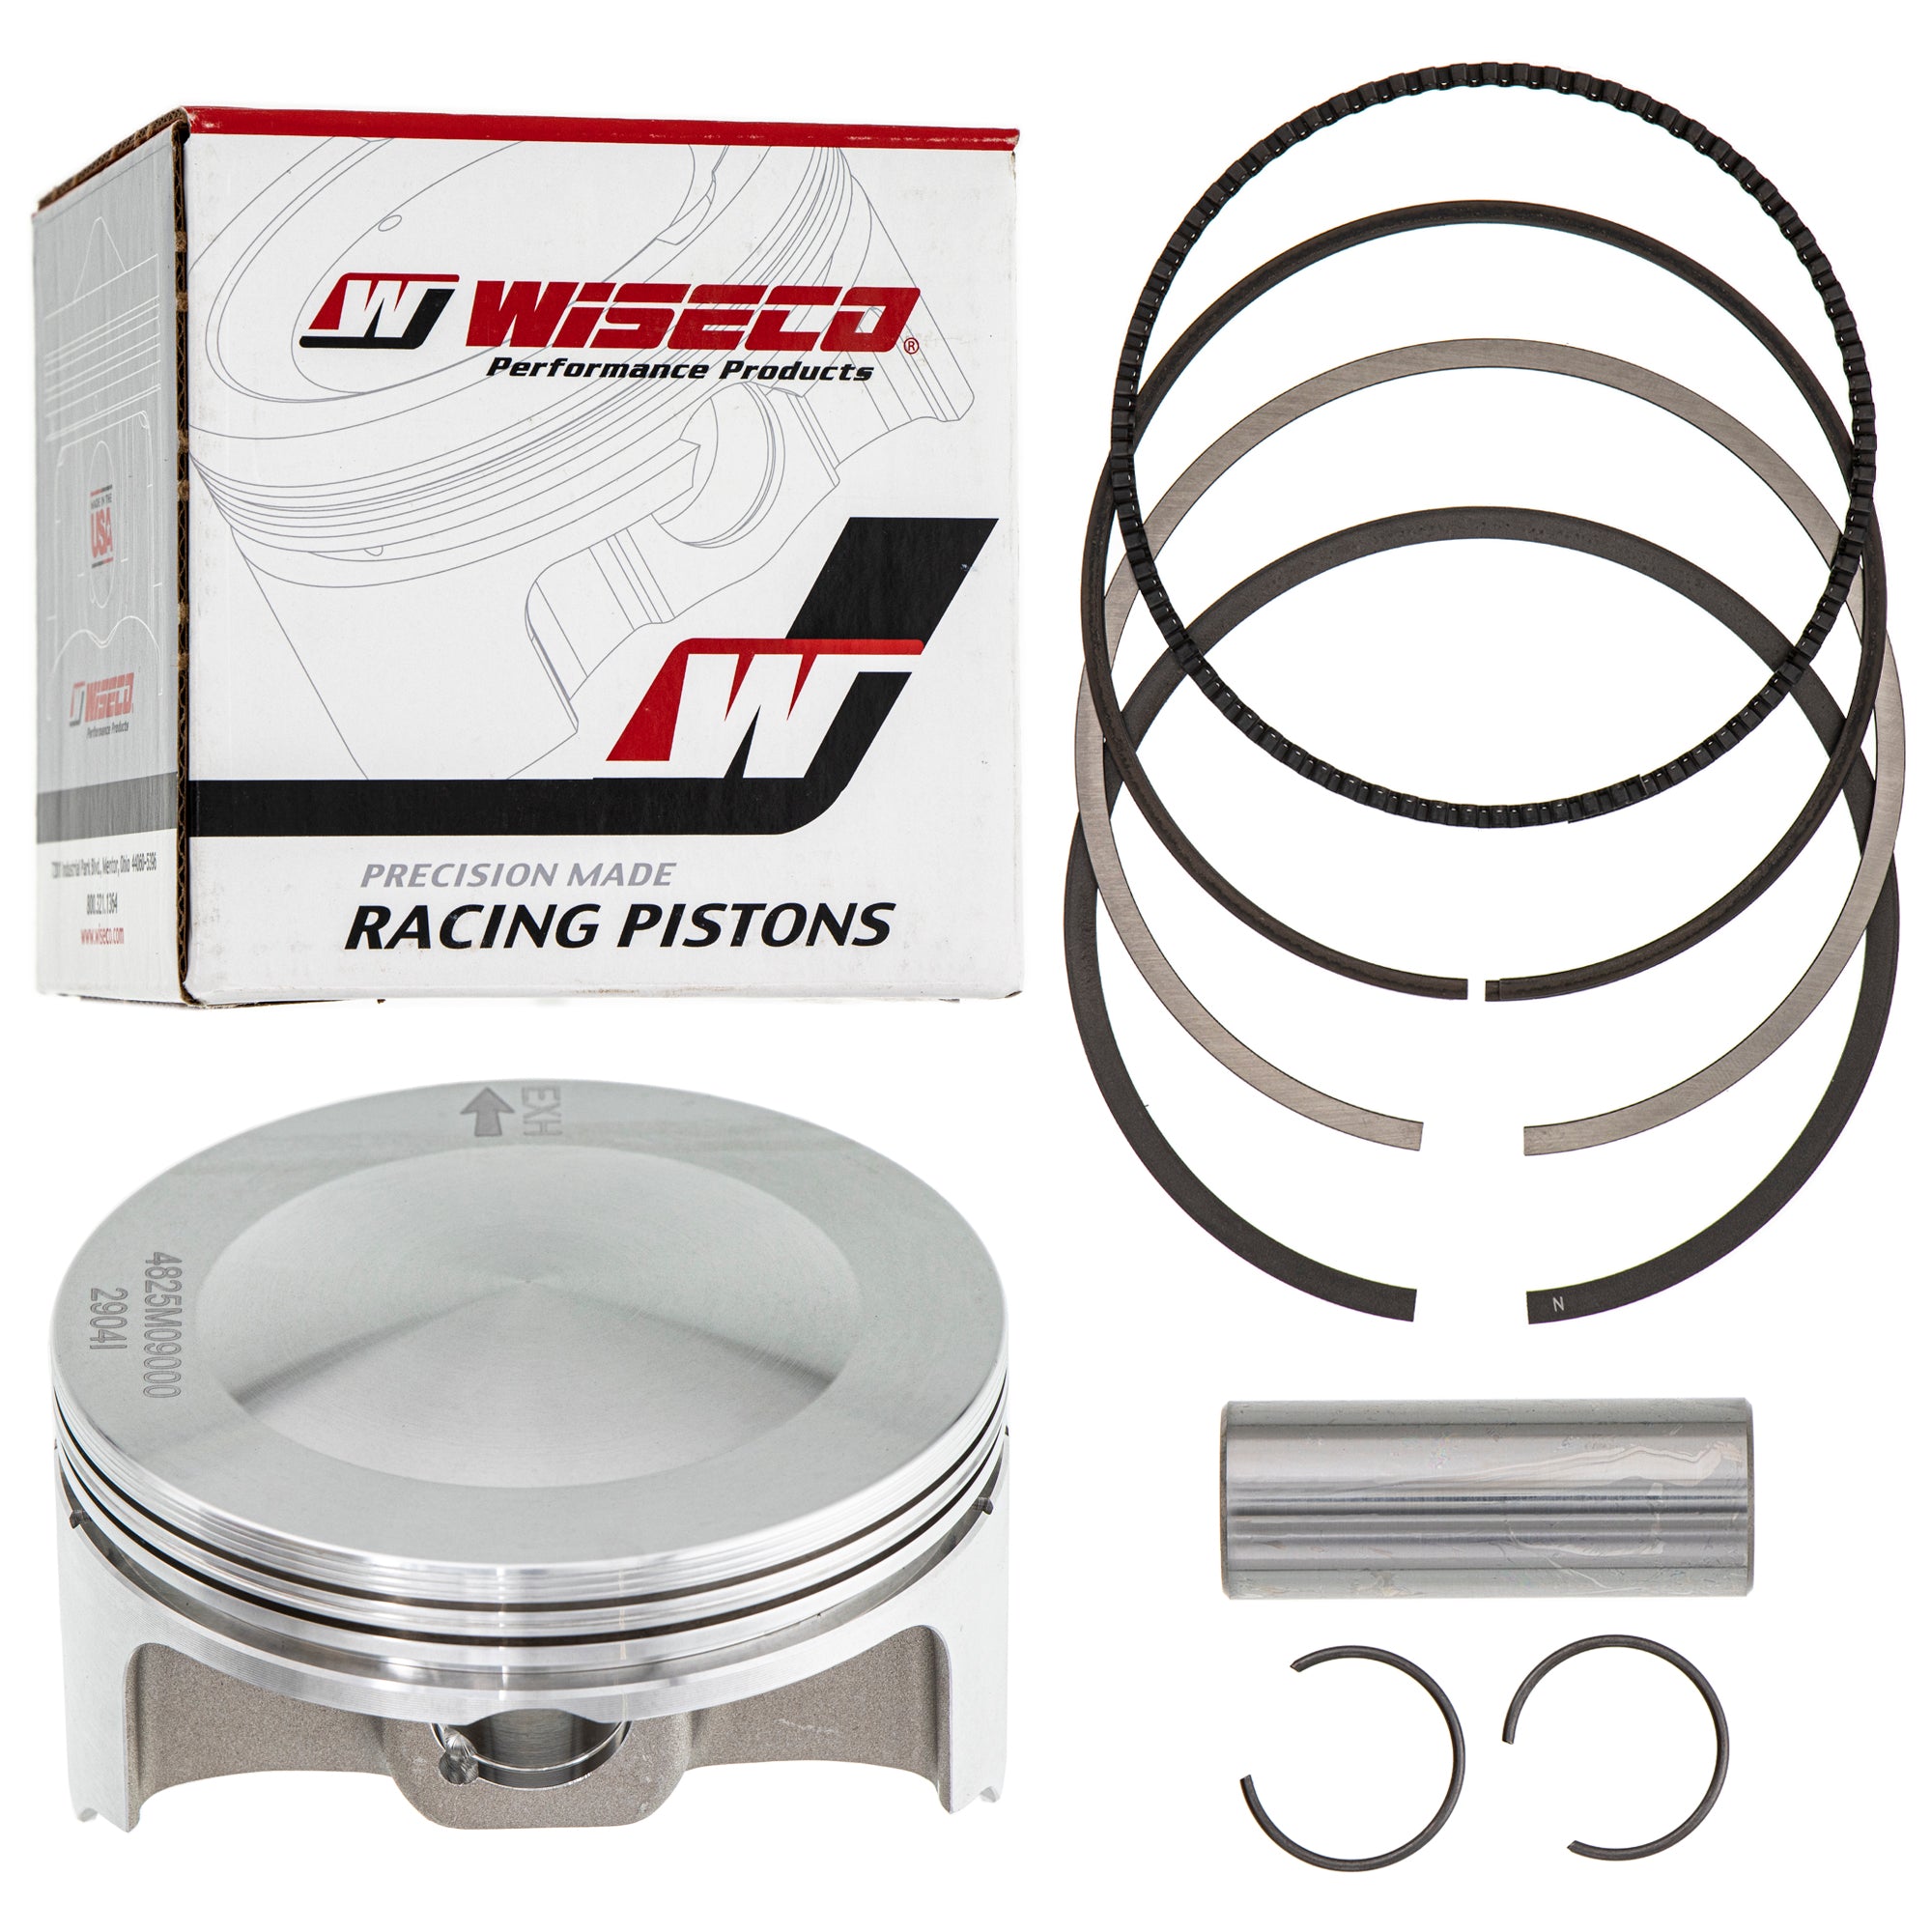 Cylinder Wiseco Piston Gasket Kit for Honda foreman 450 TRX450